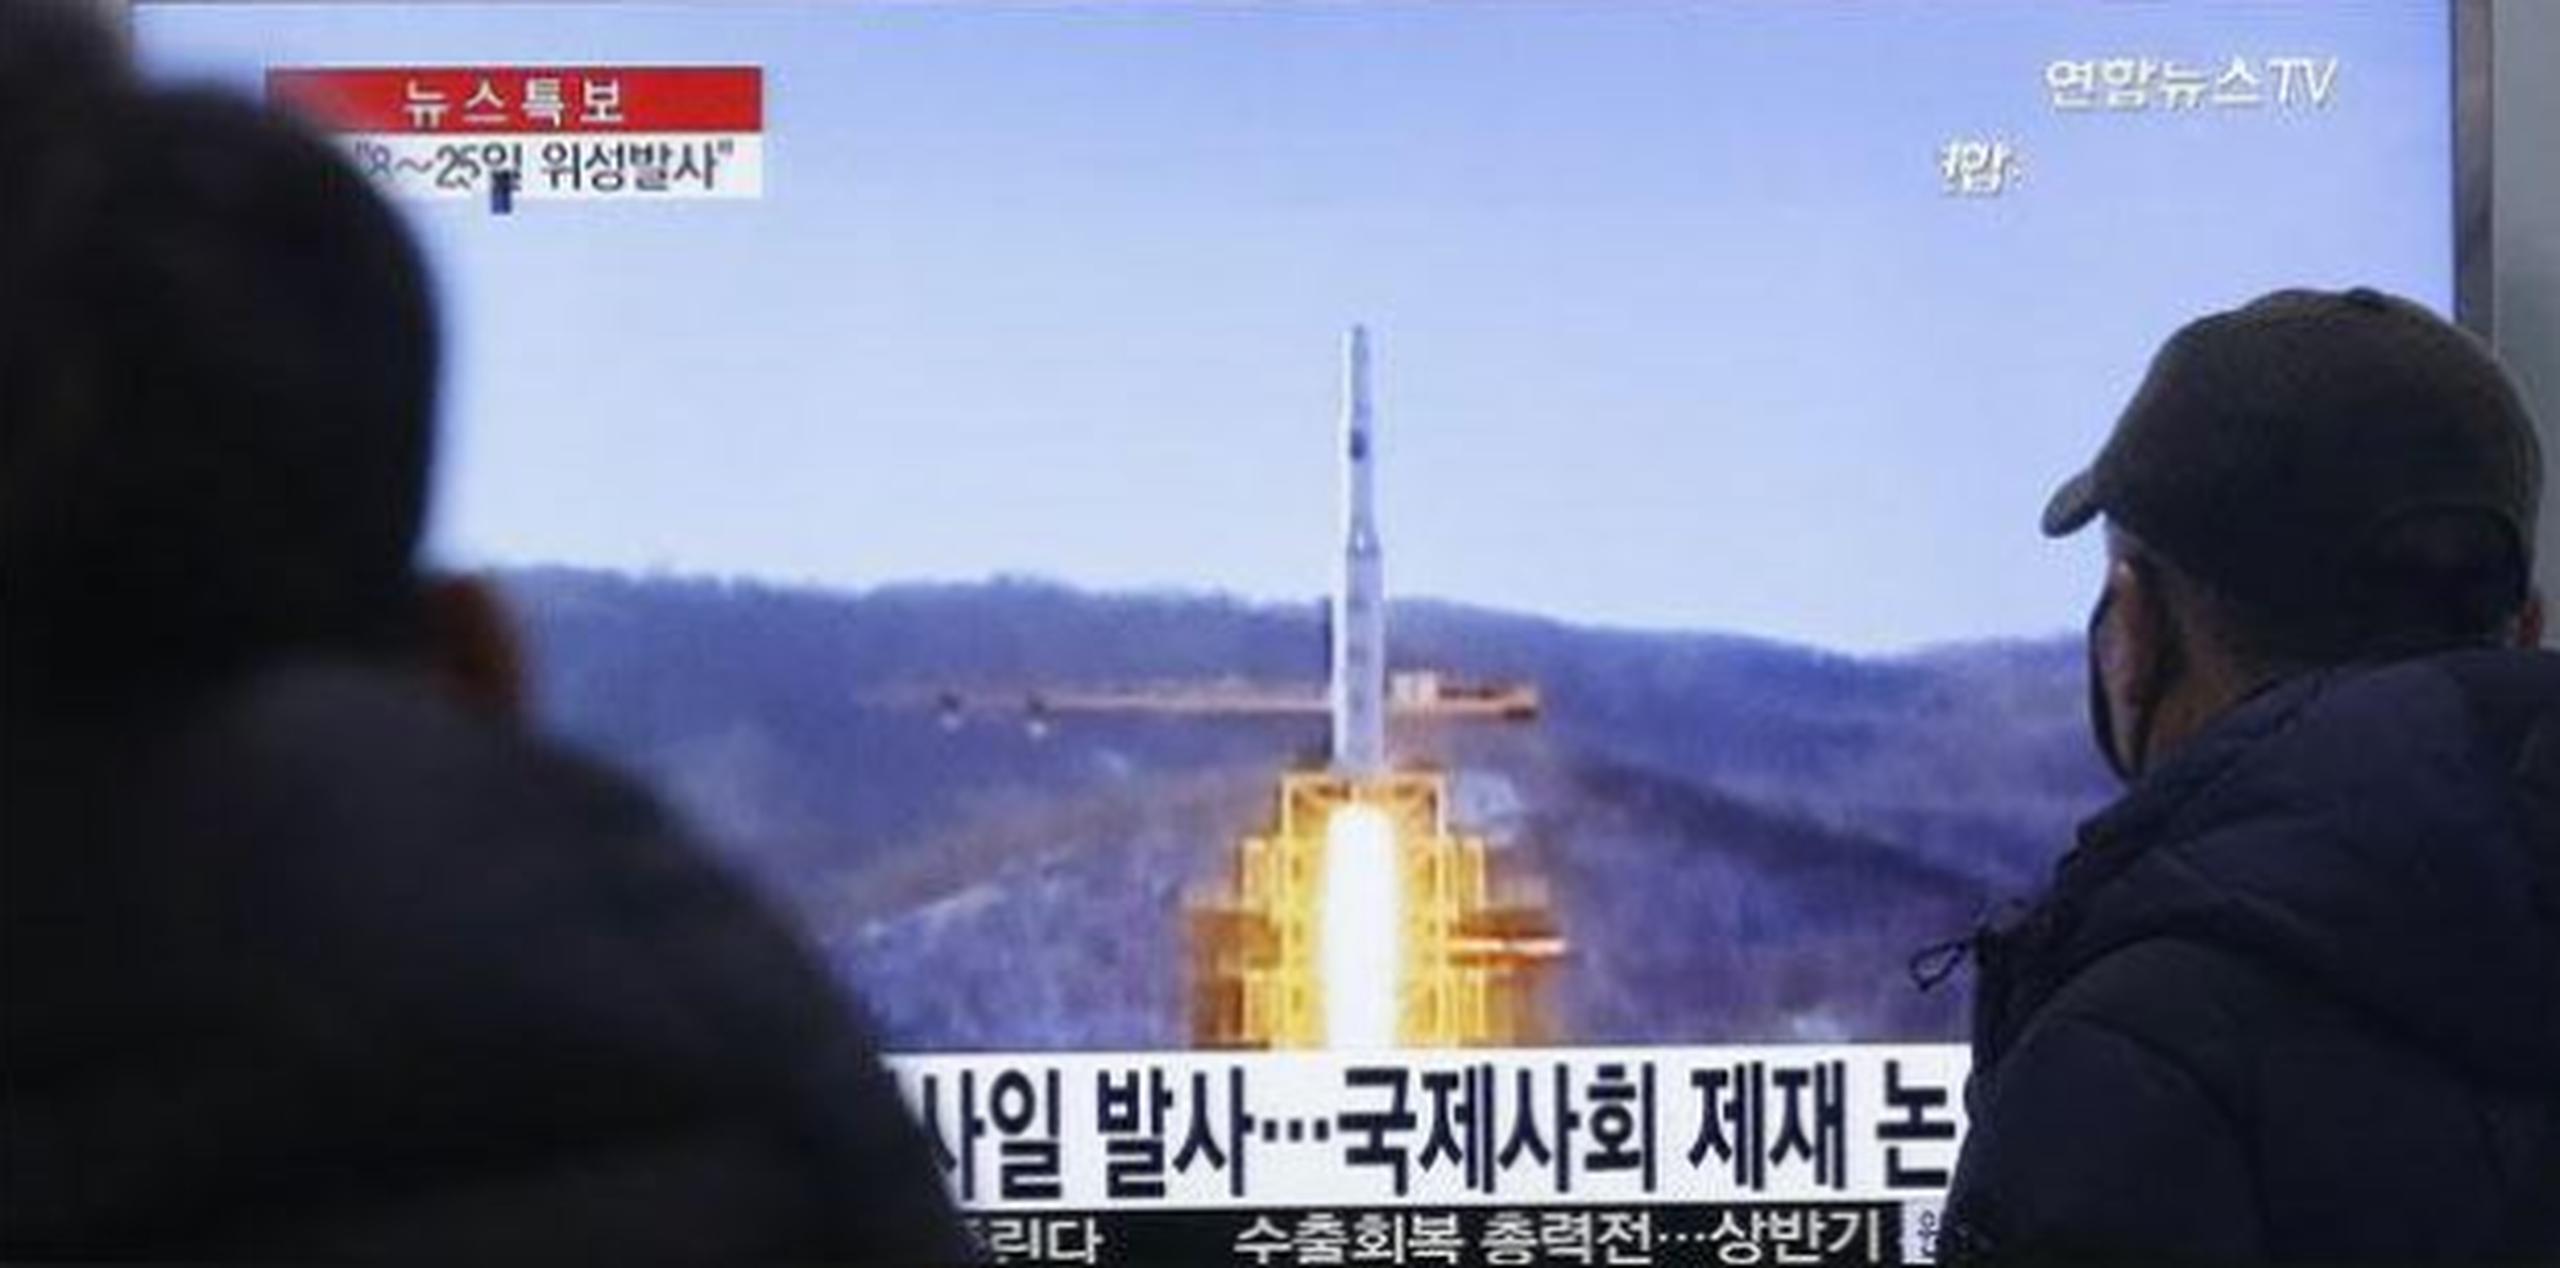 La elección del momento no sería aleatoria, "ya que (Corea del Norte) tiene en cuenta las transiciones políticas en Corea del Sur y EE.UU.", explicó Thae a la agencia de noticias surcoreana. (Archivo)